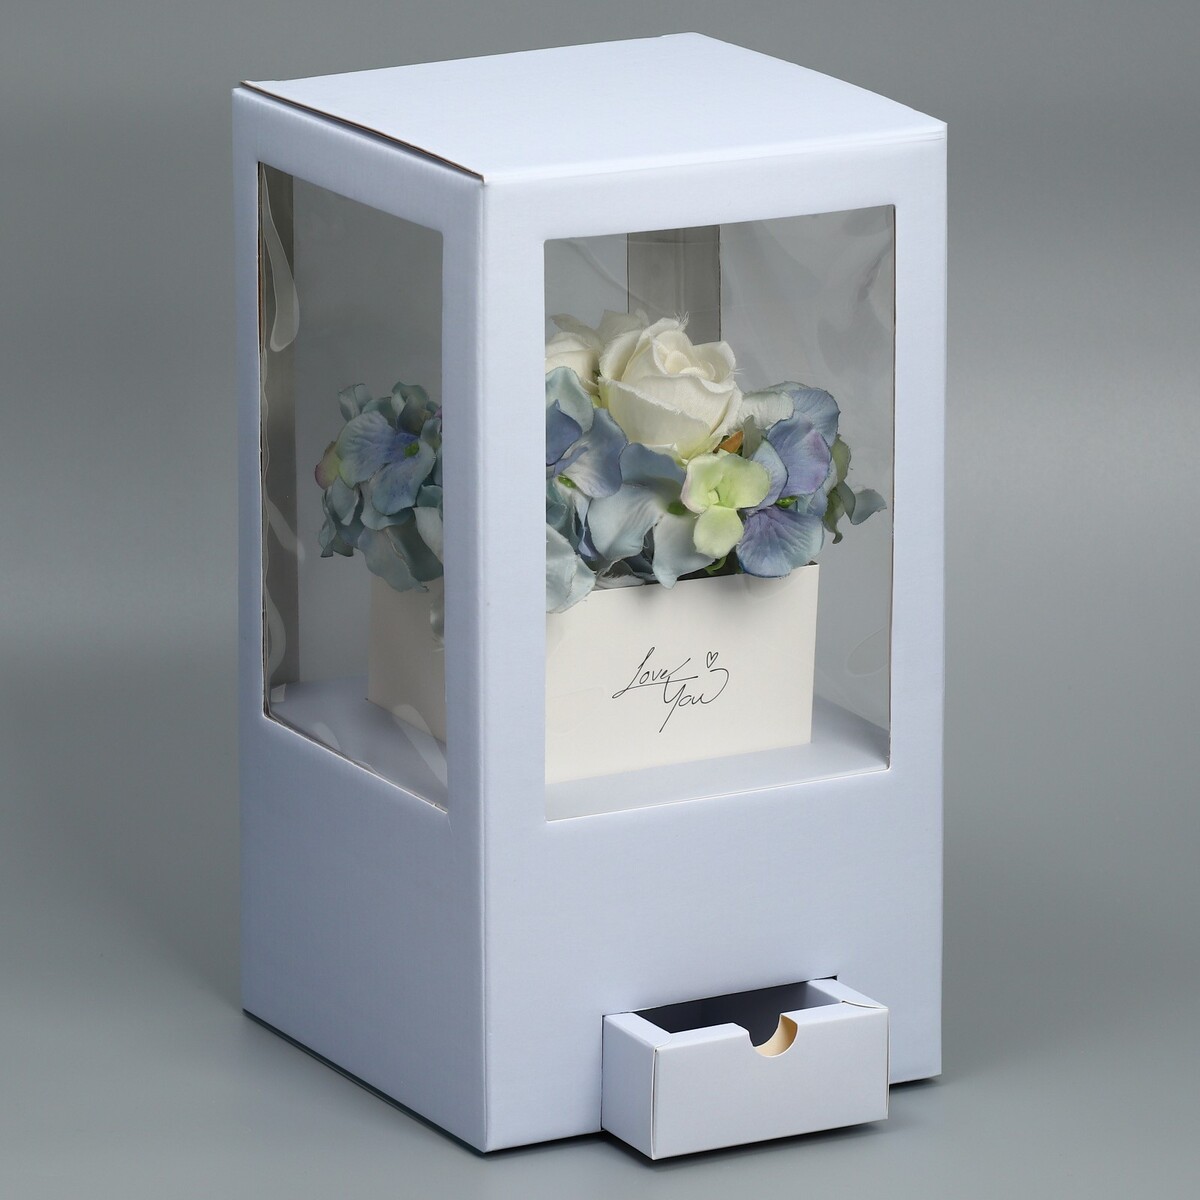 Коробка подарочная для цветов с вазой из мгк складная, упаковка,